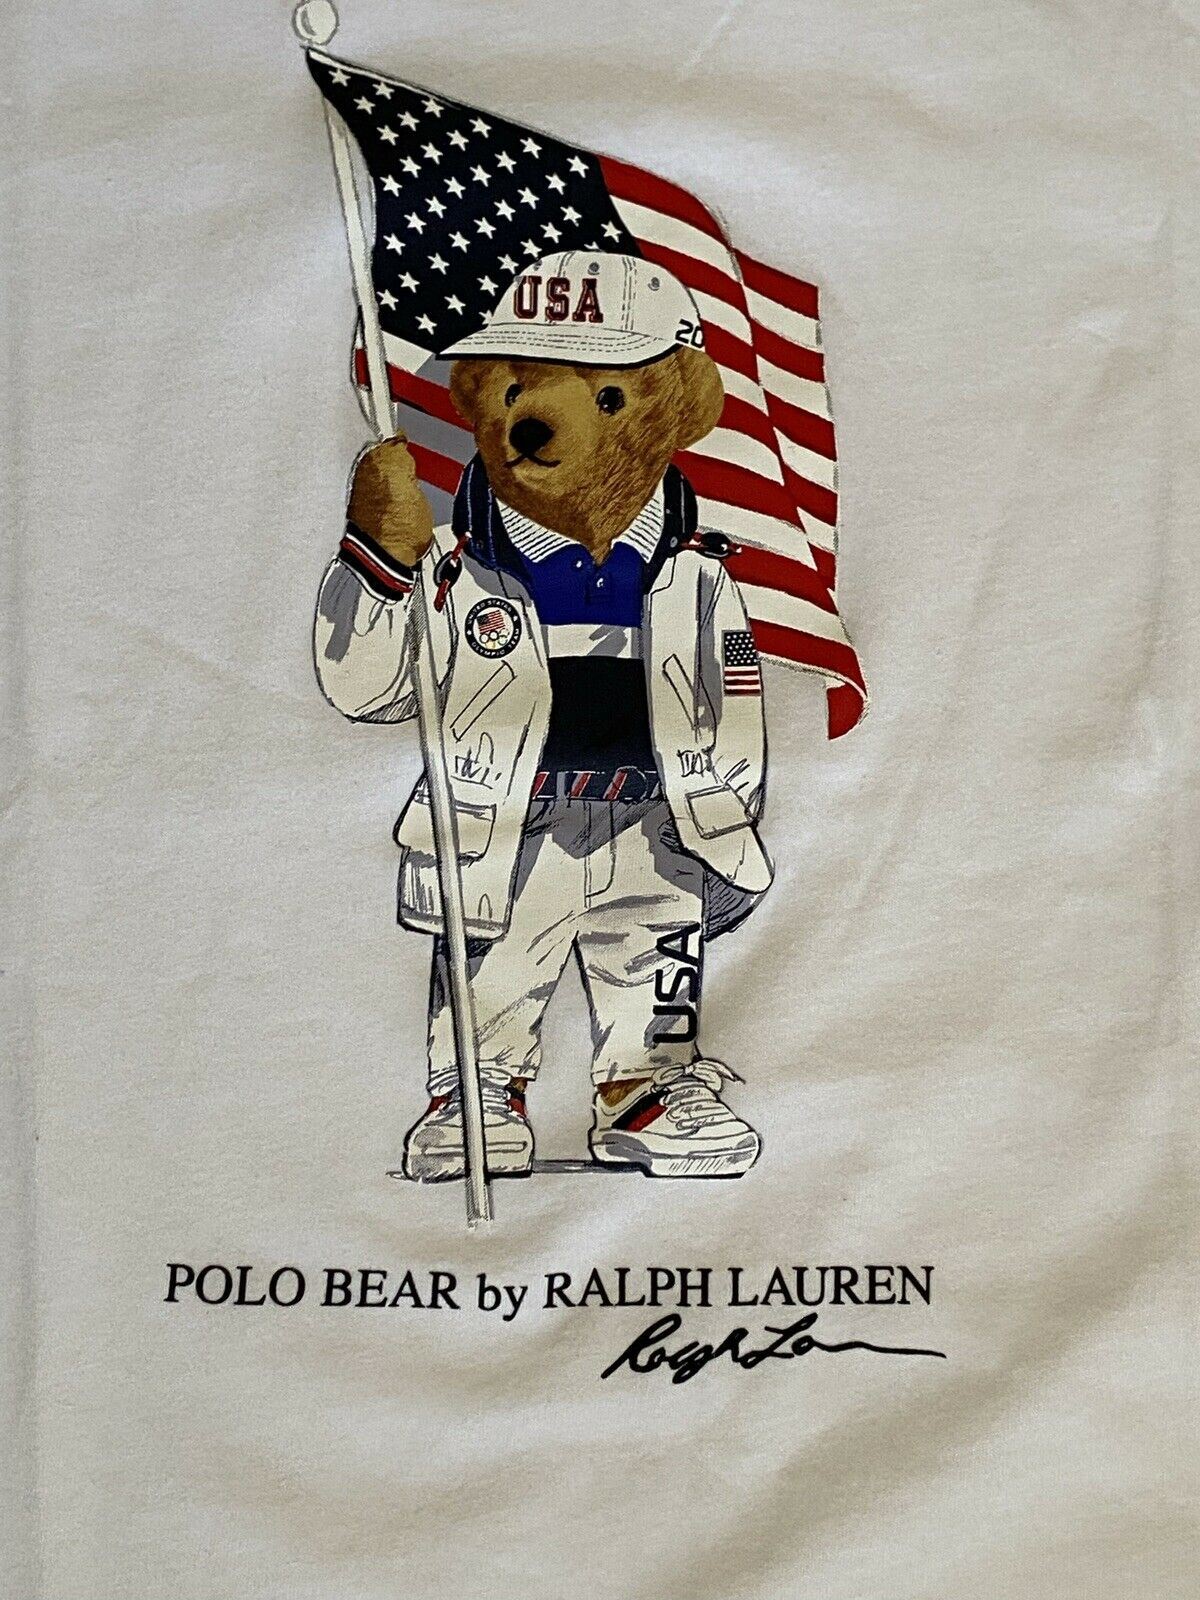 Футболка Polo Ralph Lauren для мальчиков с изображением медведя олимпийской сборной США, размер L (14–16), размер NWT, 35 долларов США.